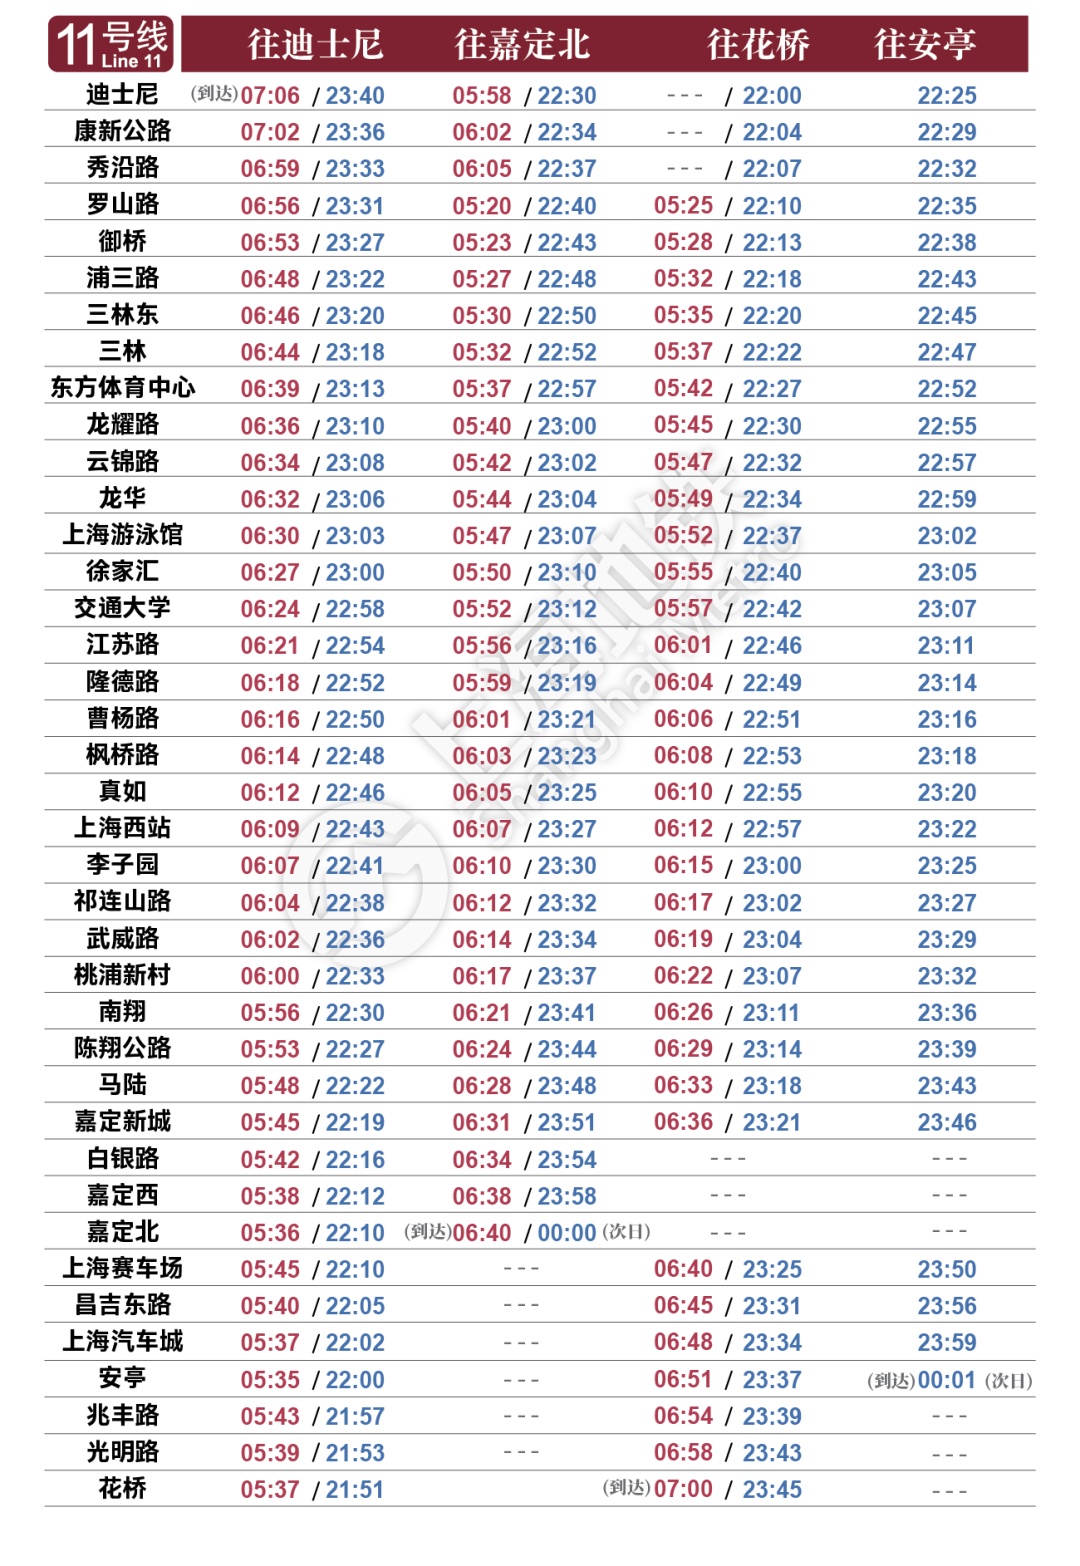 上海地铁10号线时间表图片